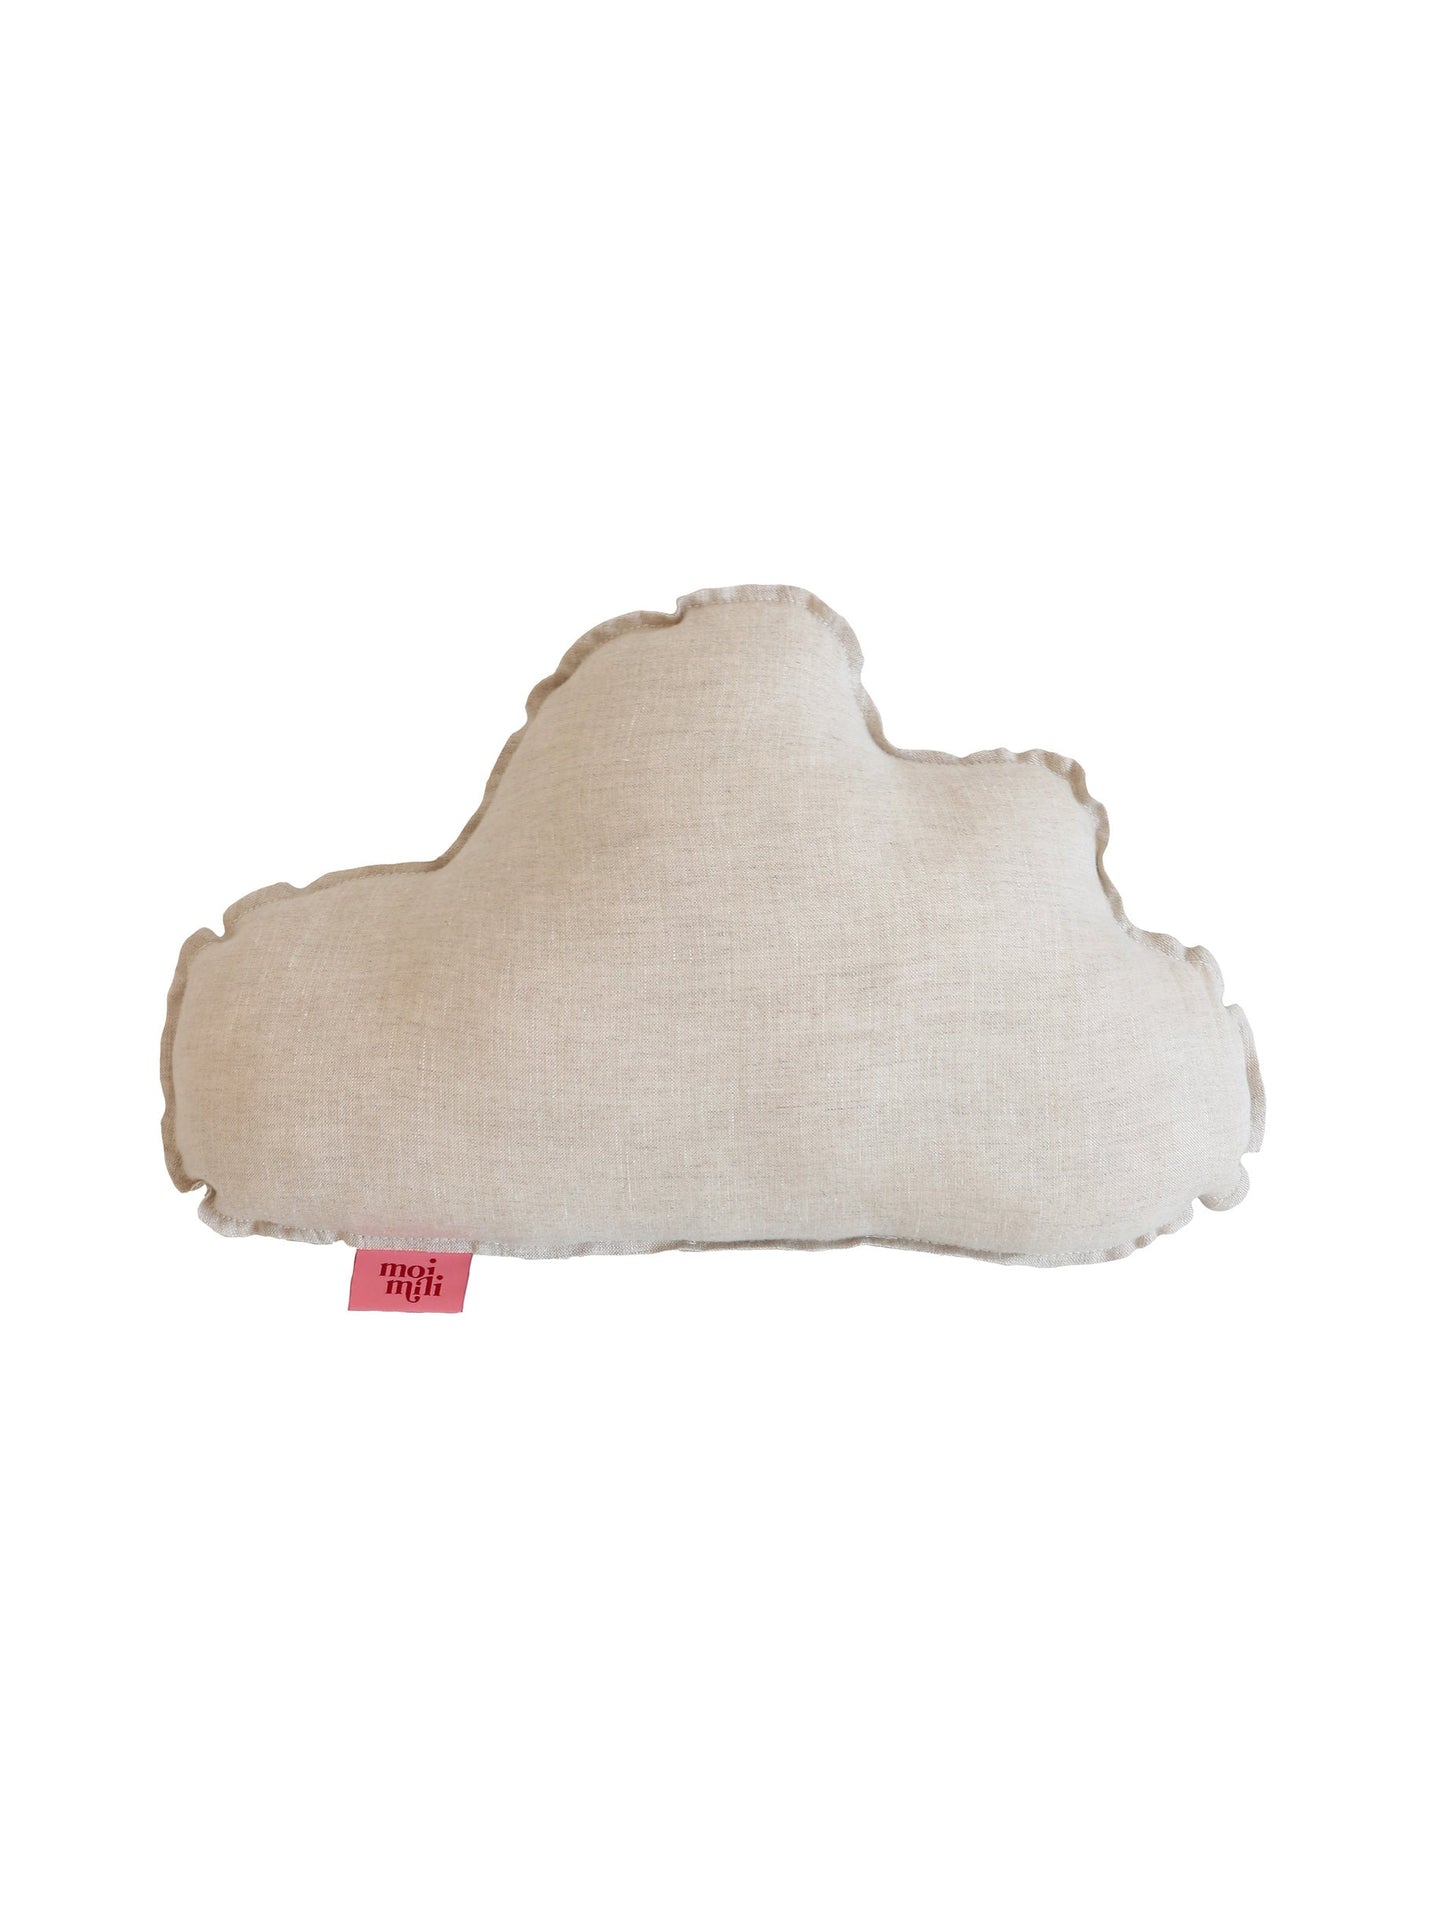 Linen “Sand” Cloud Pillow